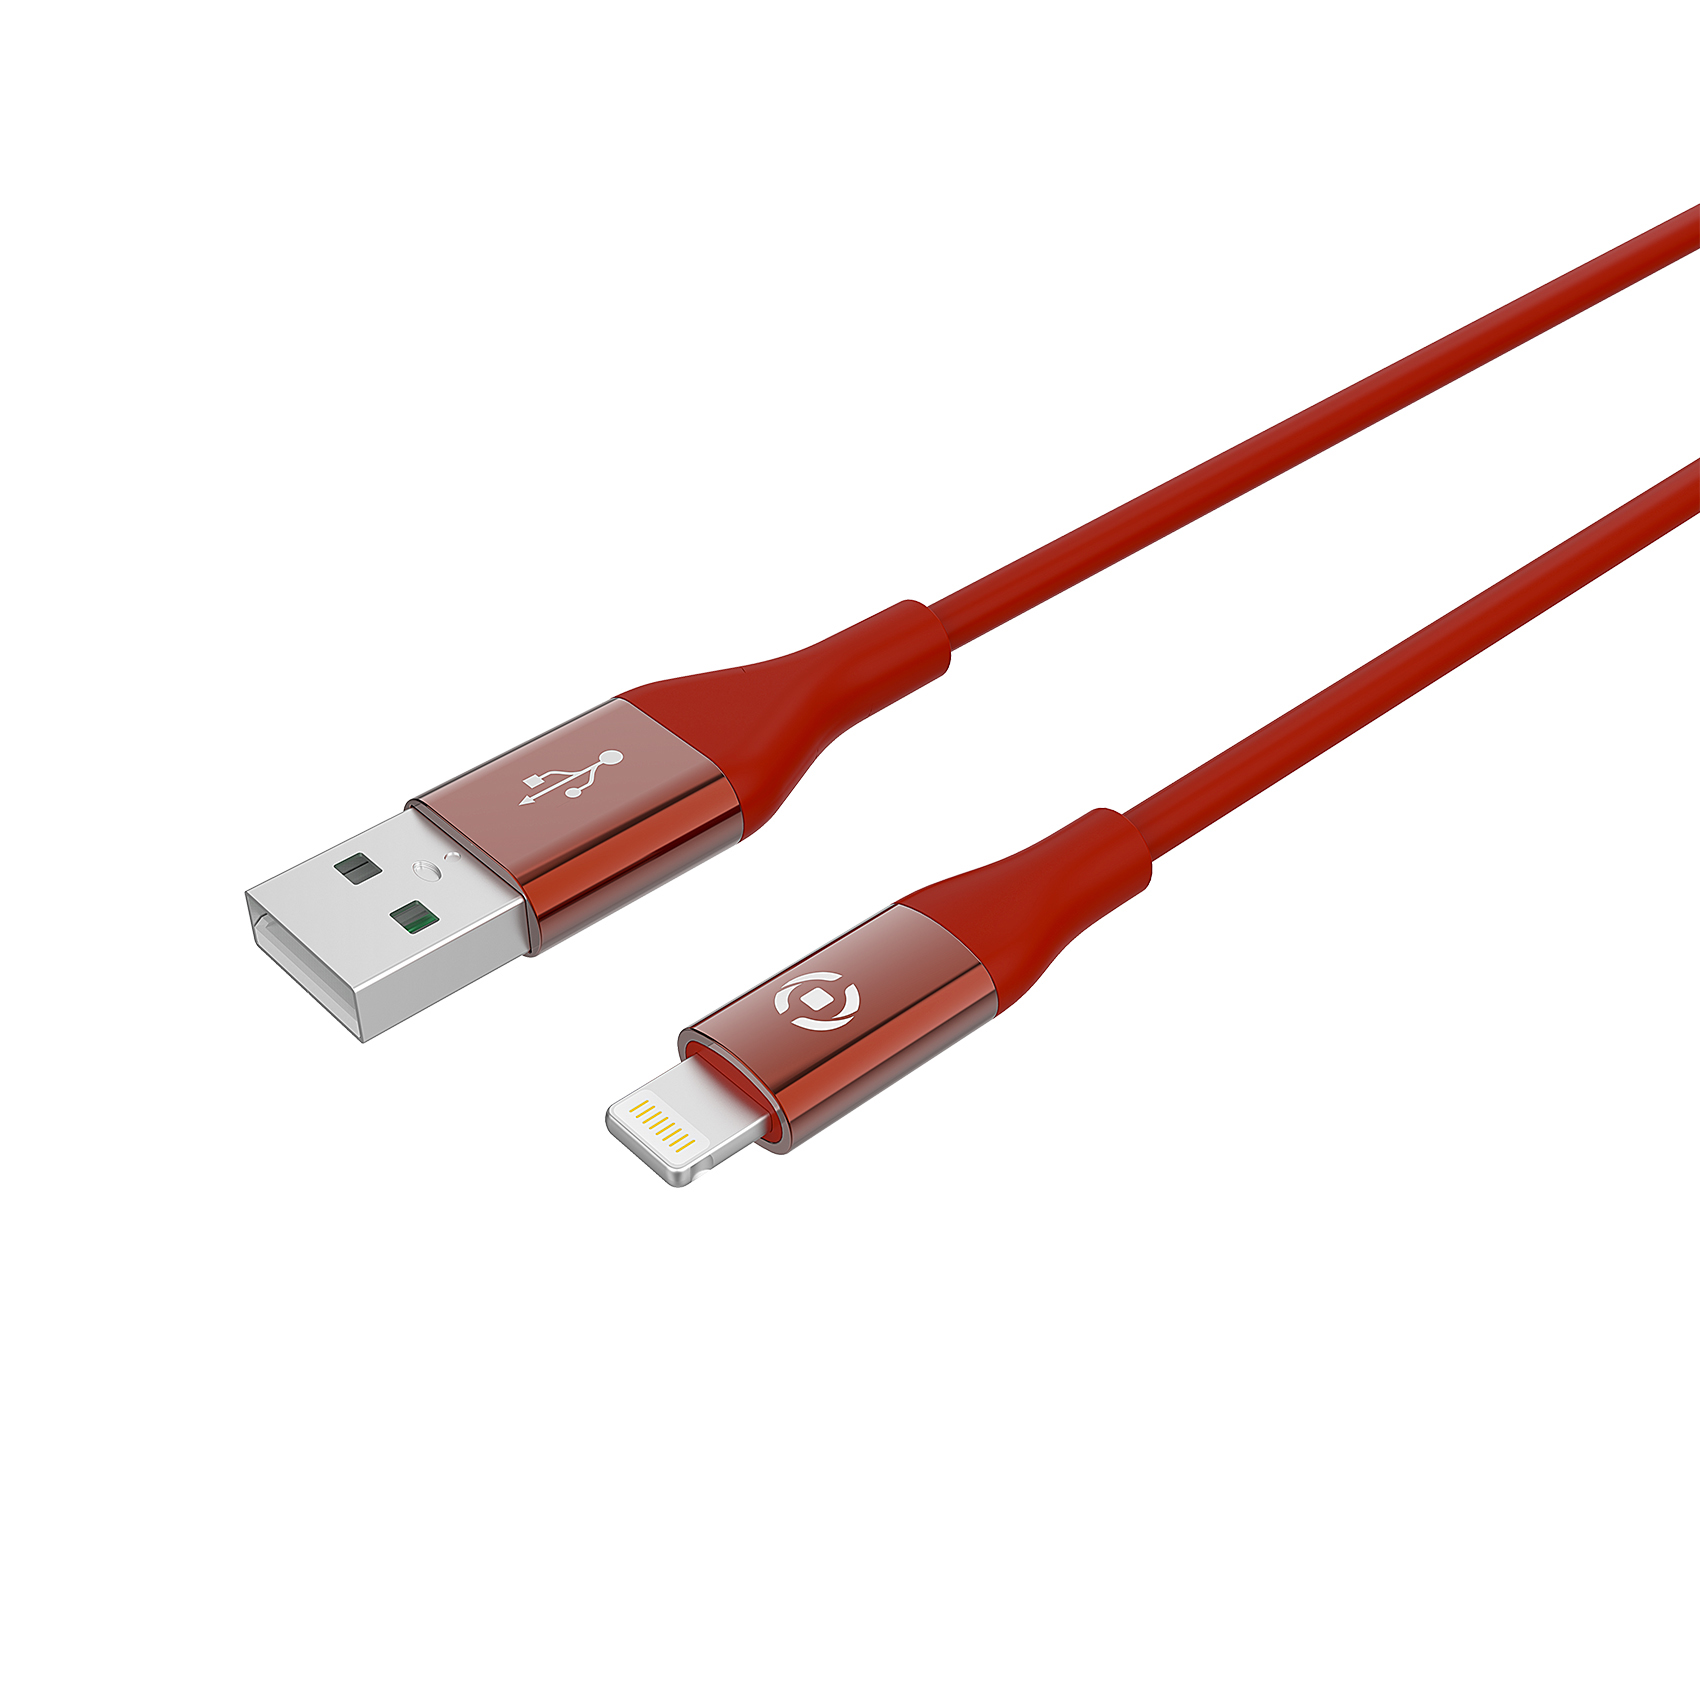 CELLY USB - LIGHTNING kabl za iPhone u CRVENOJ boji slika 1